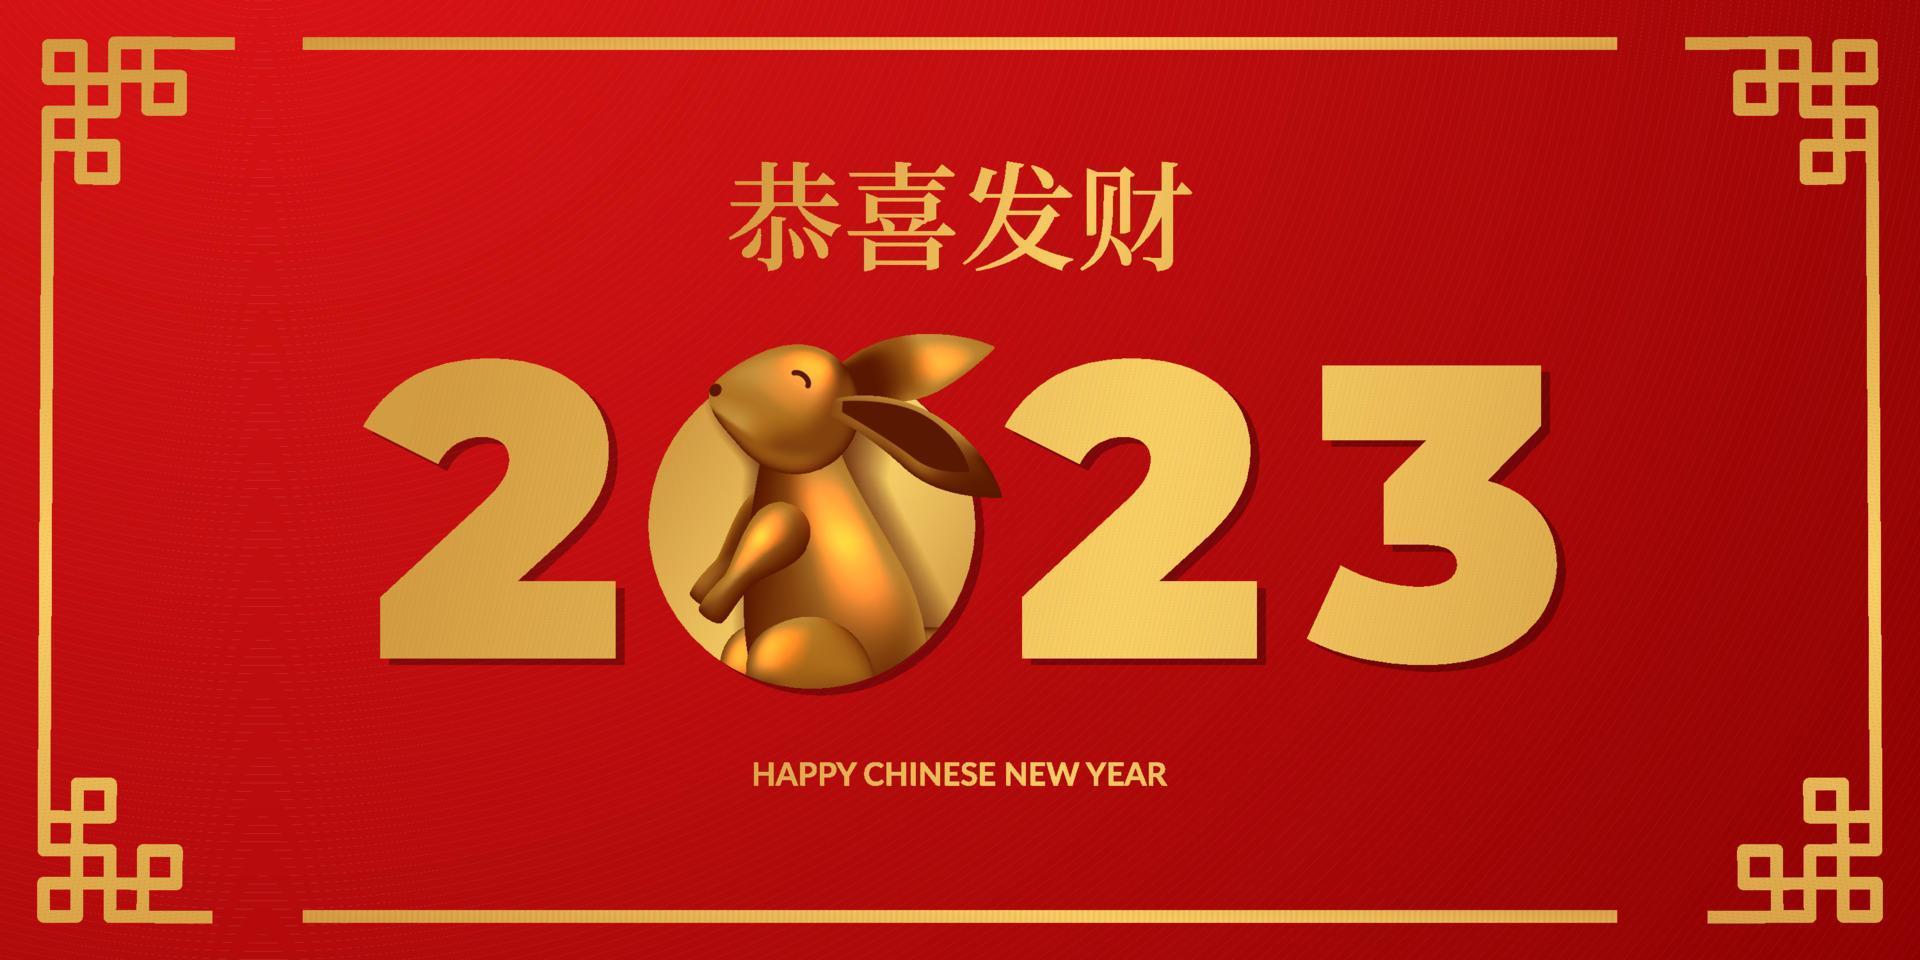 año nuevo chino 2023 año de conejo dorado con conejito 3d realista para plantilla de banner de tarjeta de felicitación vector